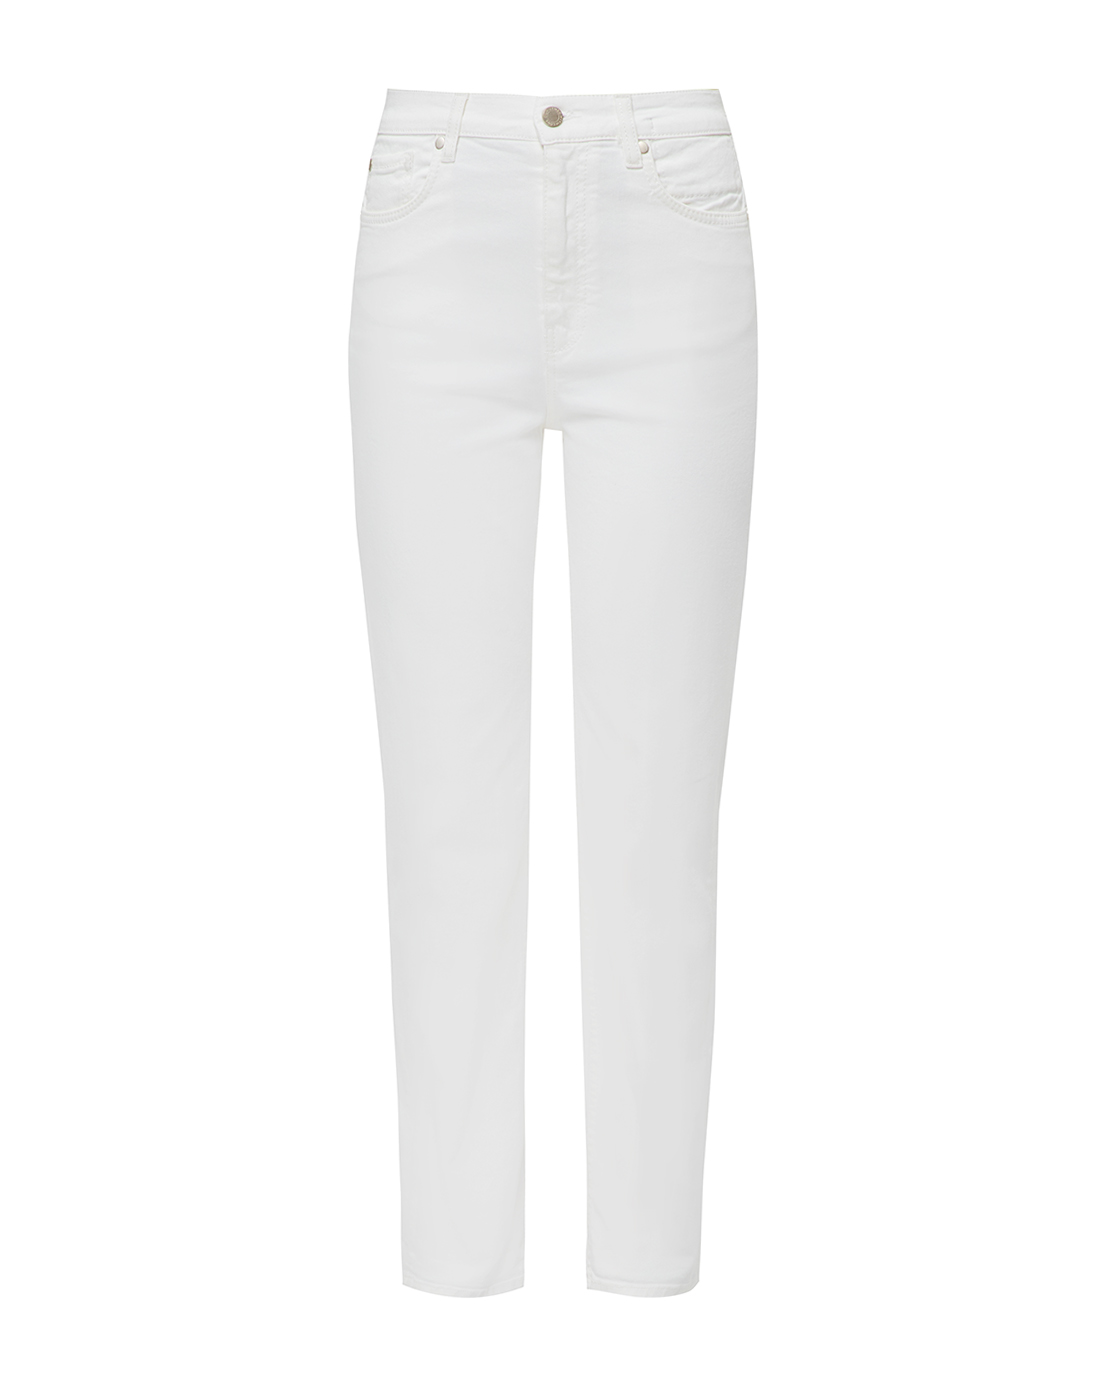 Жіночі білі штани-1